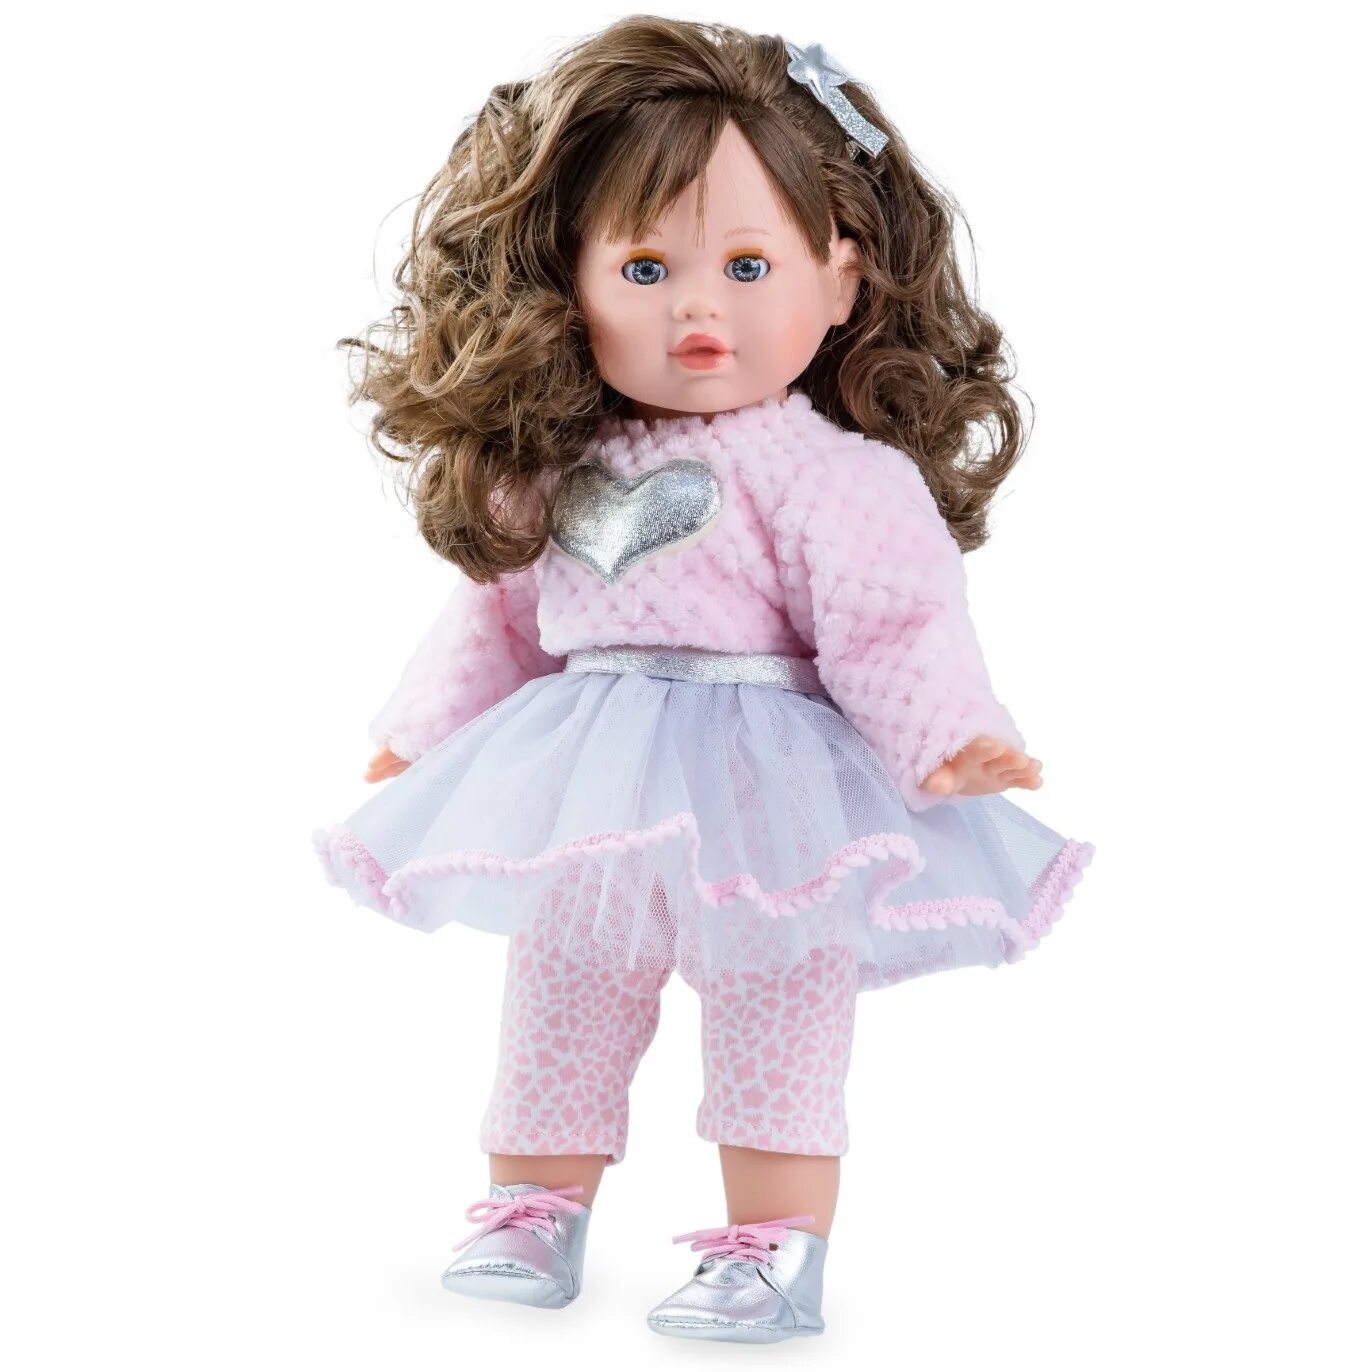 Купить куклу б у. Кукла Nines d'Onil. Кукла большая Nines artesanals d'Onil. Кукла коллекционная мягконабивная немецкая 2002 года Сесилия.